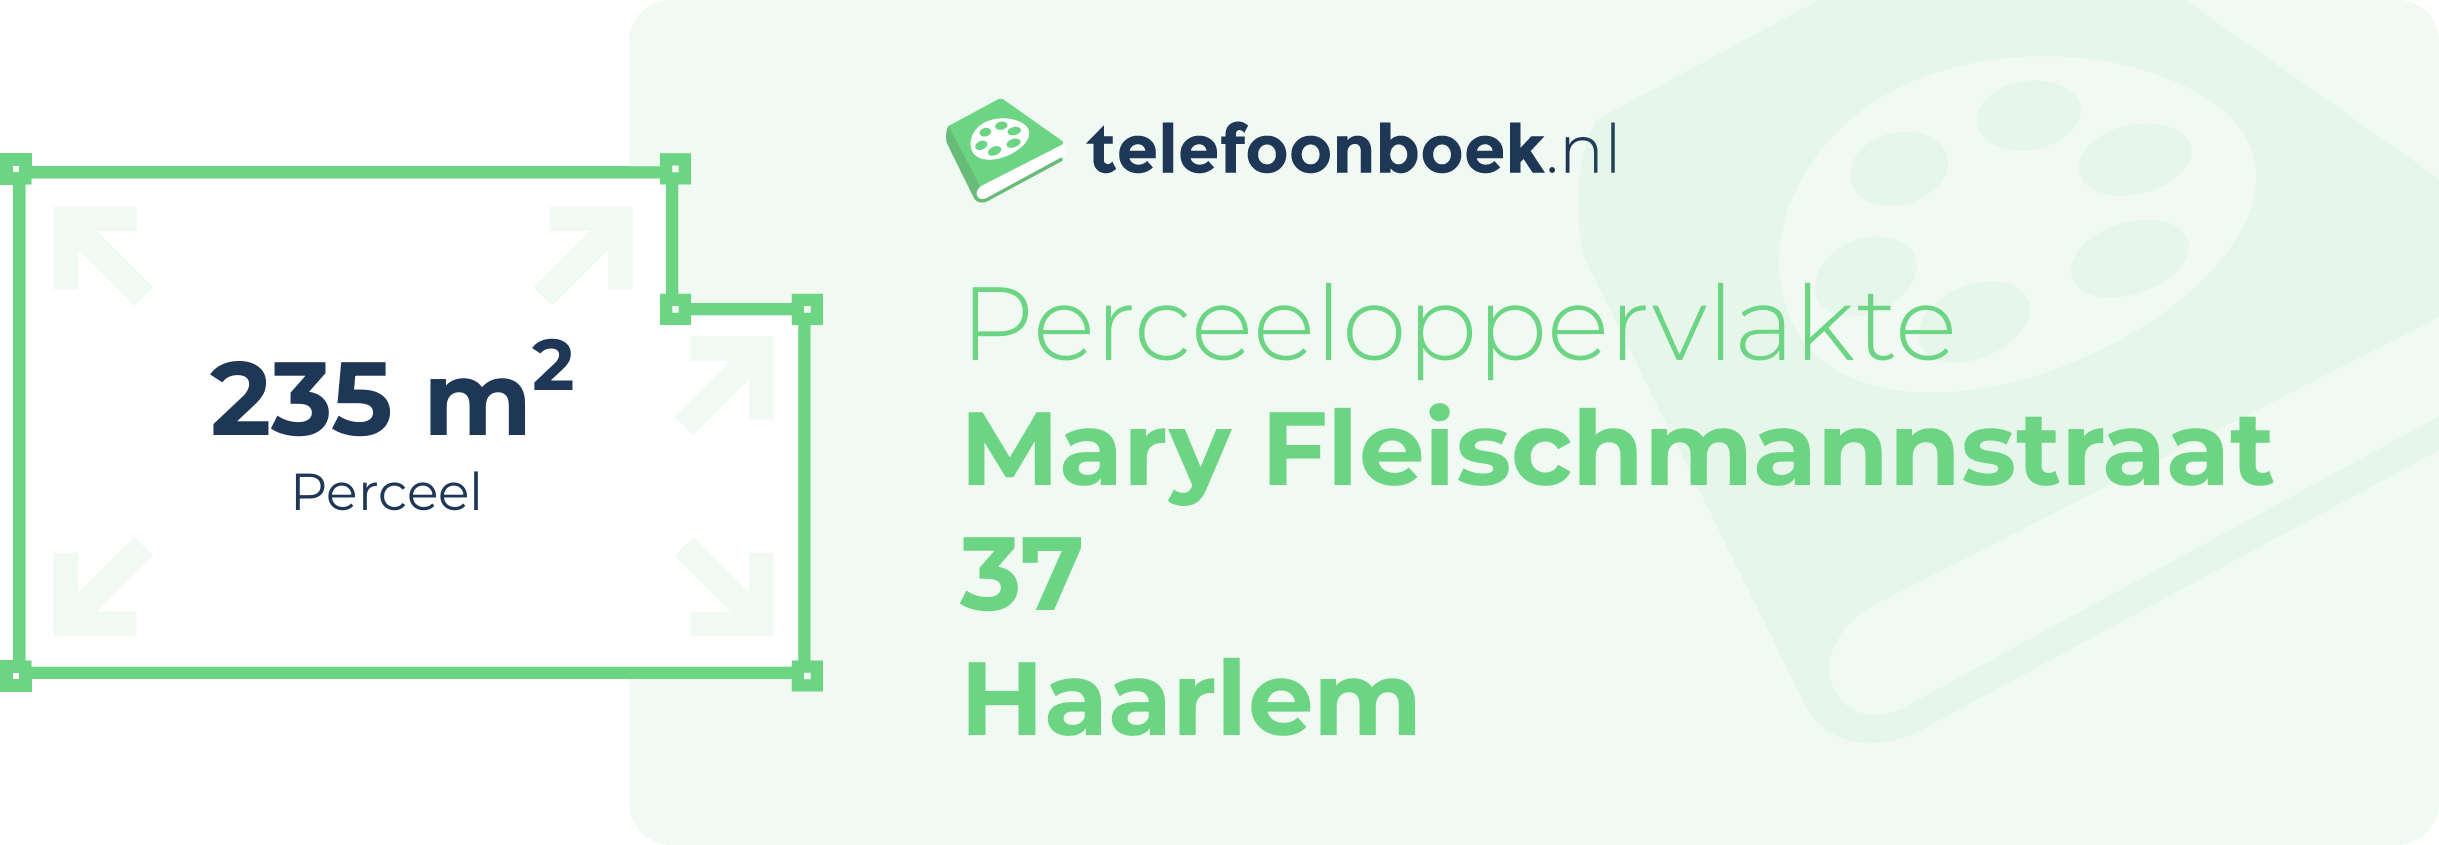 Perceeloppervlakte Mary Fleischmannstraat 37 Haarlem